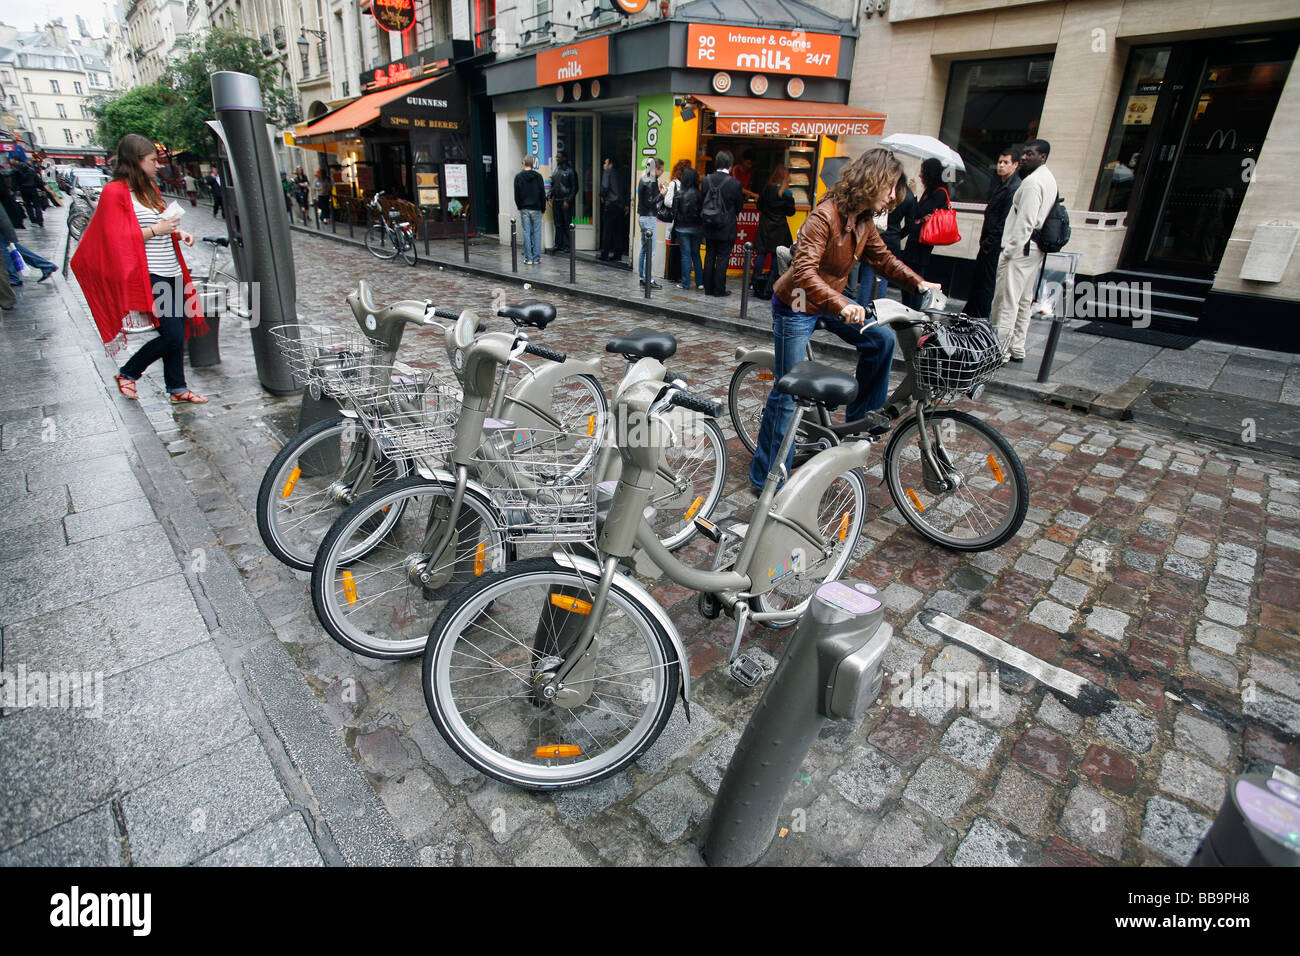 Bicycle rental station, Paris Stock Photo